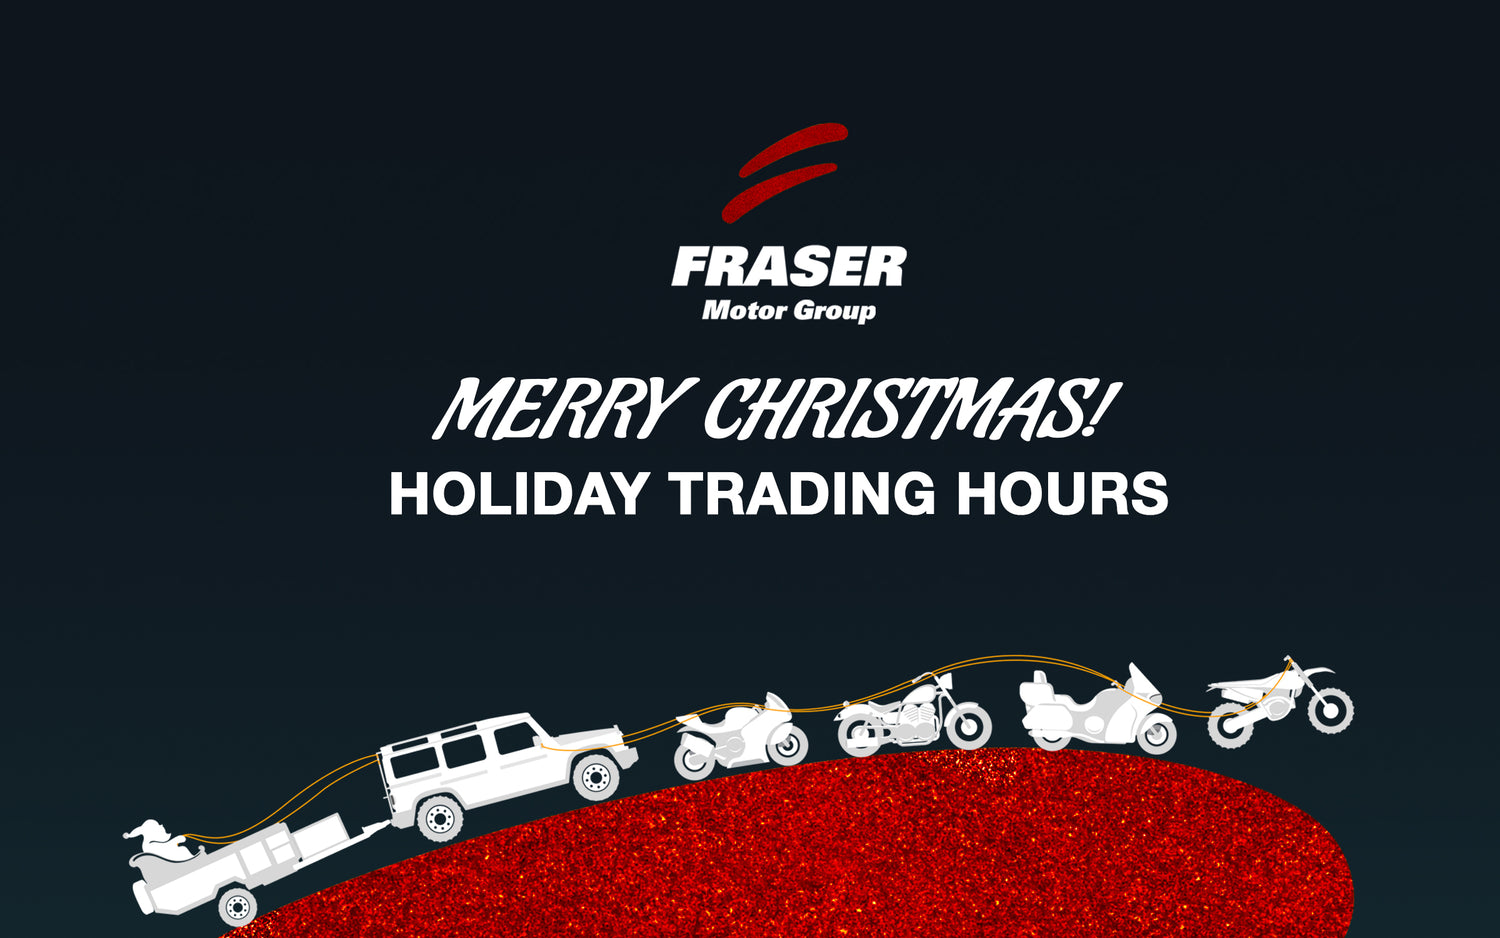 Fraser Motor Group Christmas Trading Hours